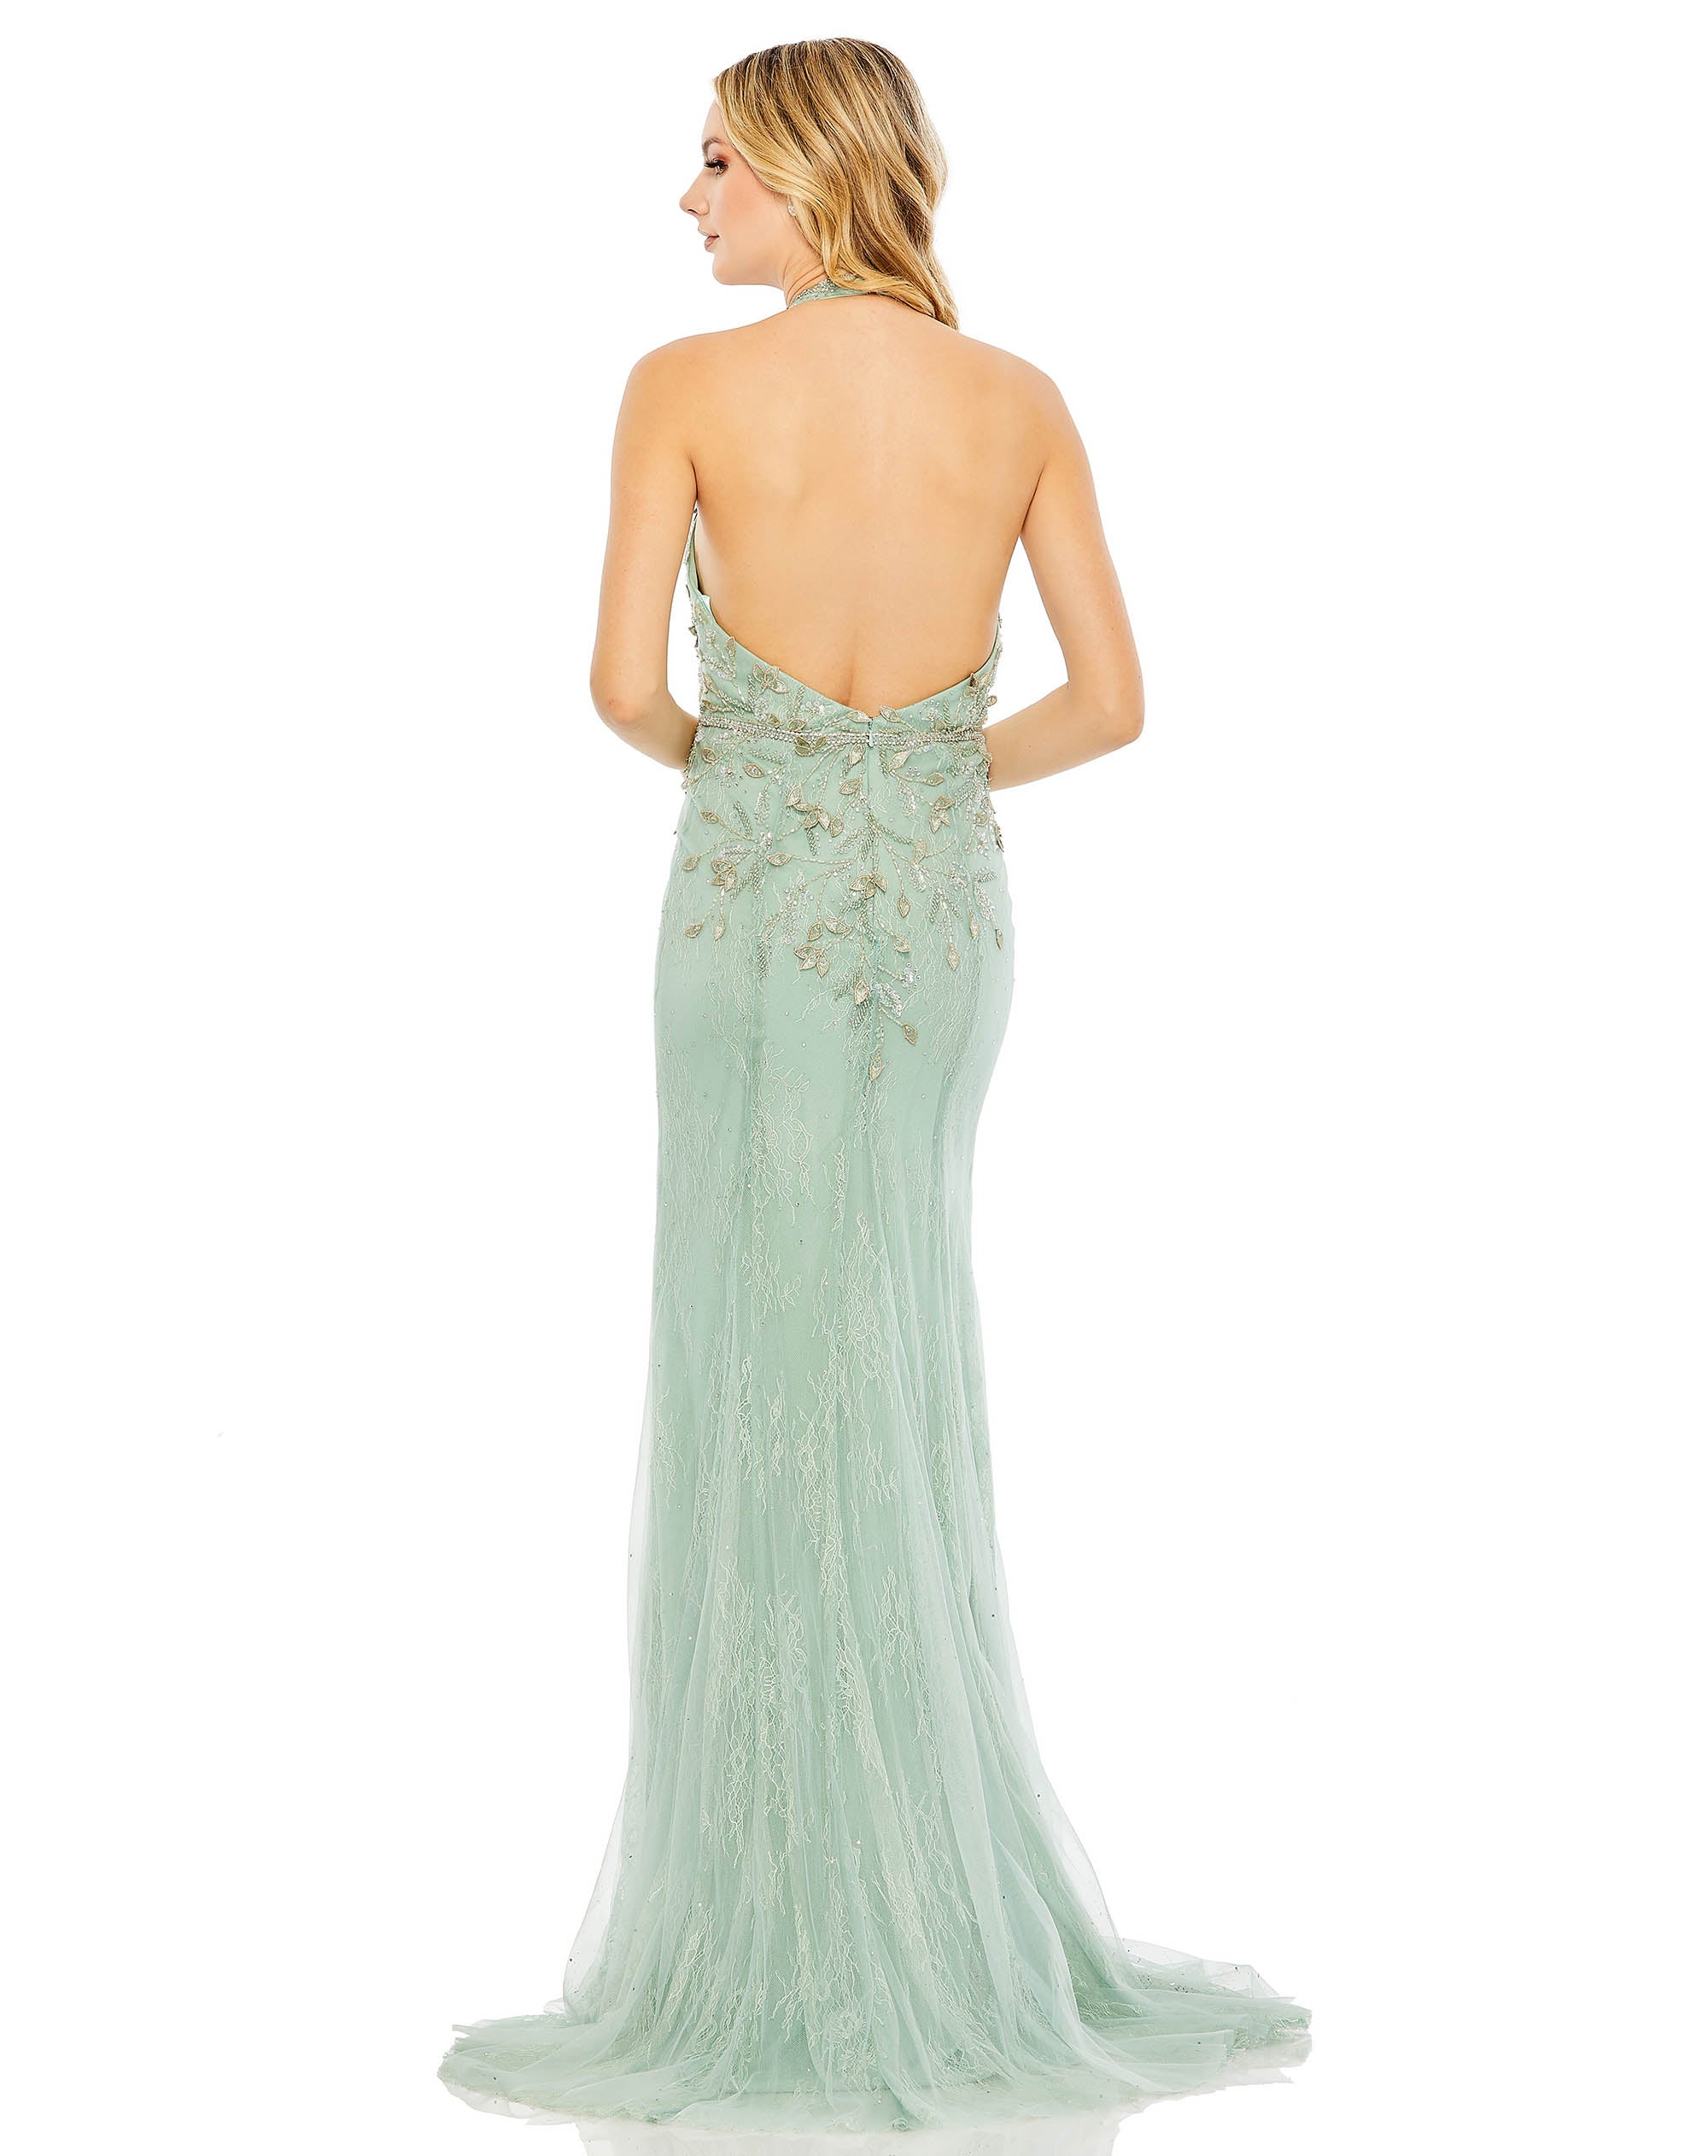 Lace Embellished Halter Strap Trumpet Gown | Sample | Sz. 2